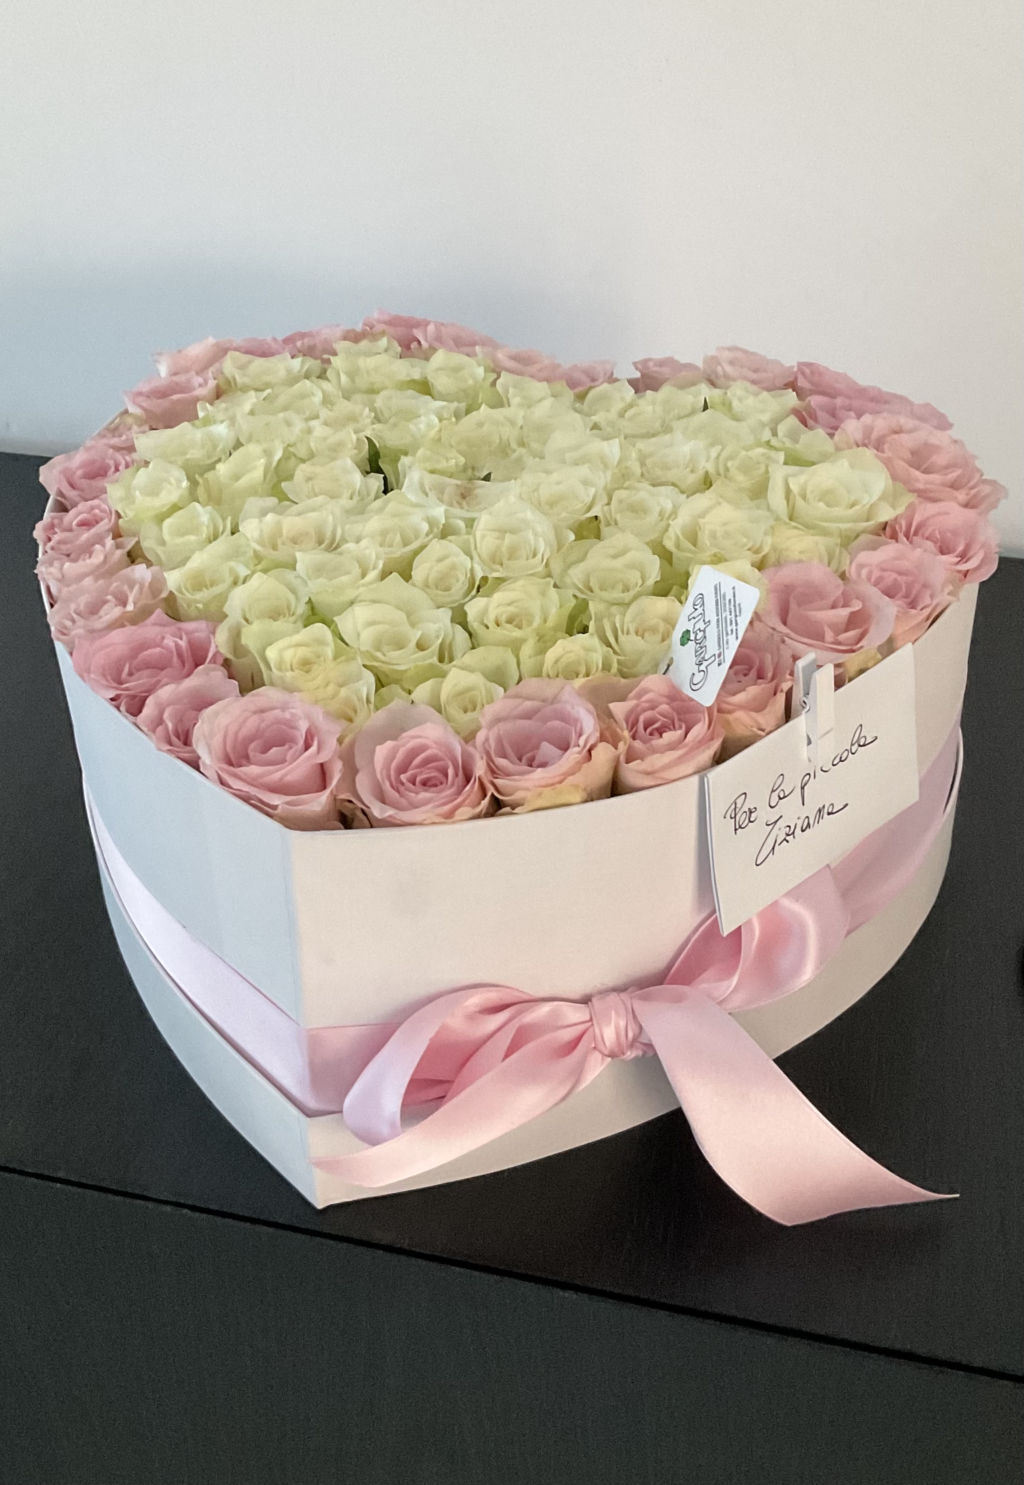 Box fiori love con rose bianche e rosa